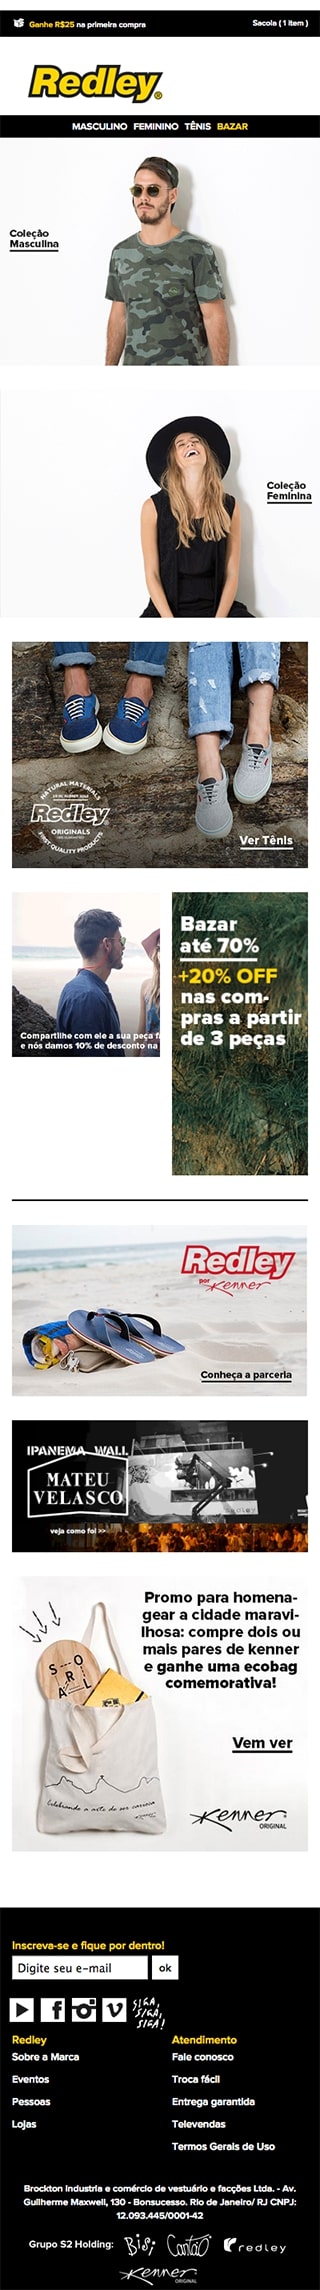 Redley - Versão Mobile Website antes